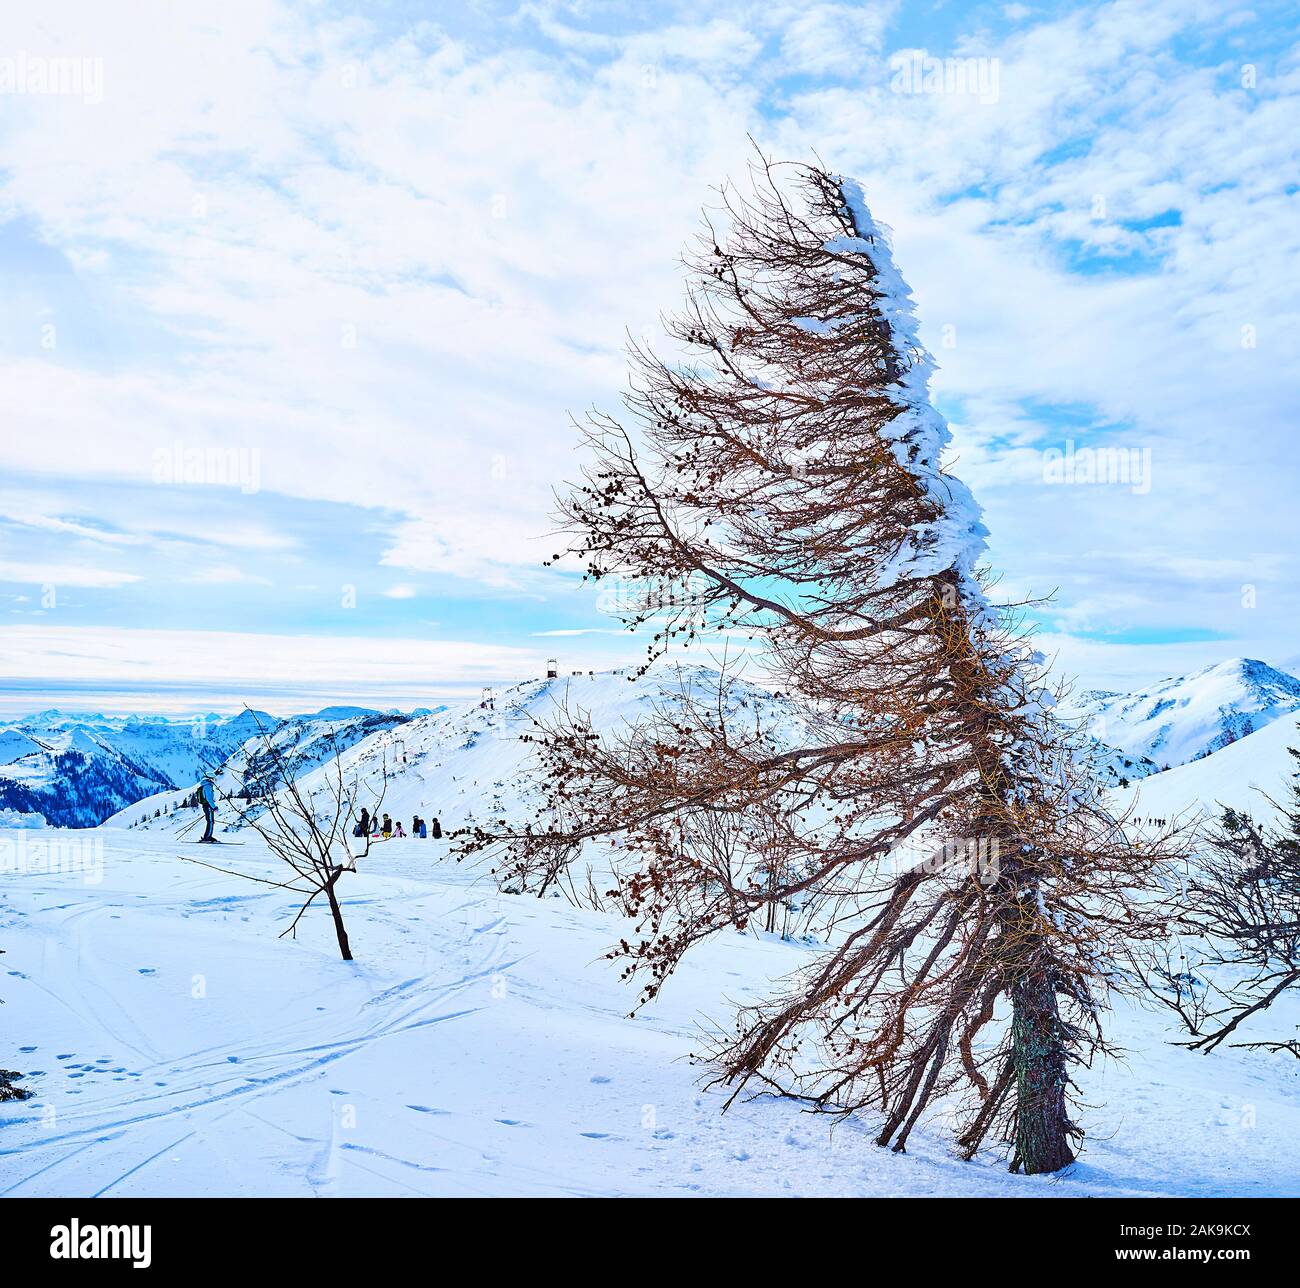 Die verschneite Weite der Feuerkogel Hochplateau mit alten trocken vom Wind geformten Spruce Tree im Vordergrund, Ebensee, Salzkammergut, Österreich Stockfoto